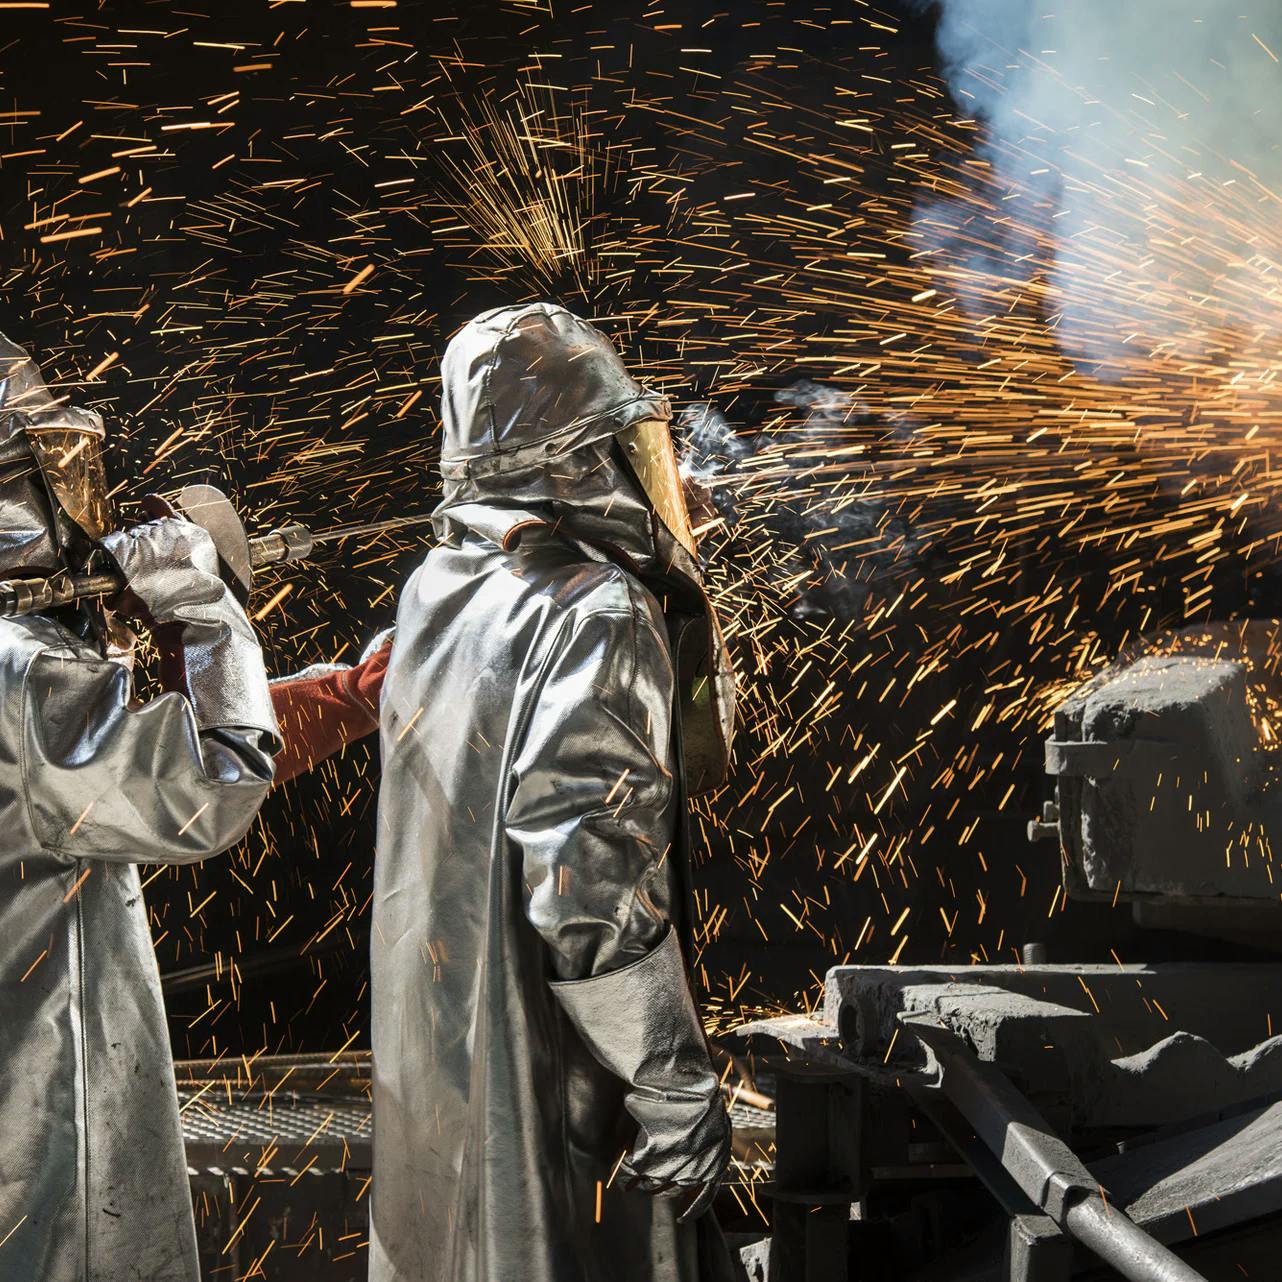 Zwei Arbeiter stehen mit Schutzkleidung vor einem Batterie-Recycling-Ofen, von dem Funken sprühen.